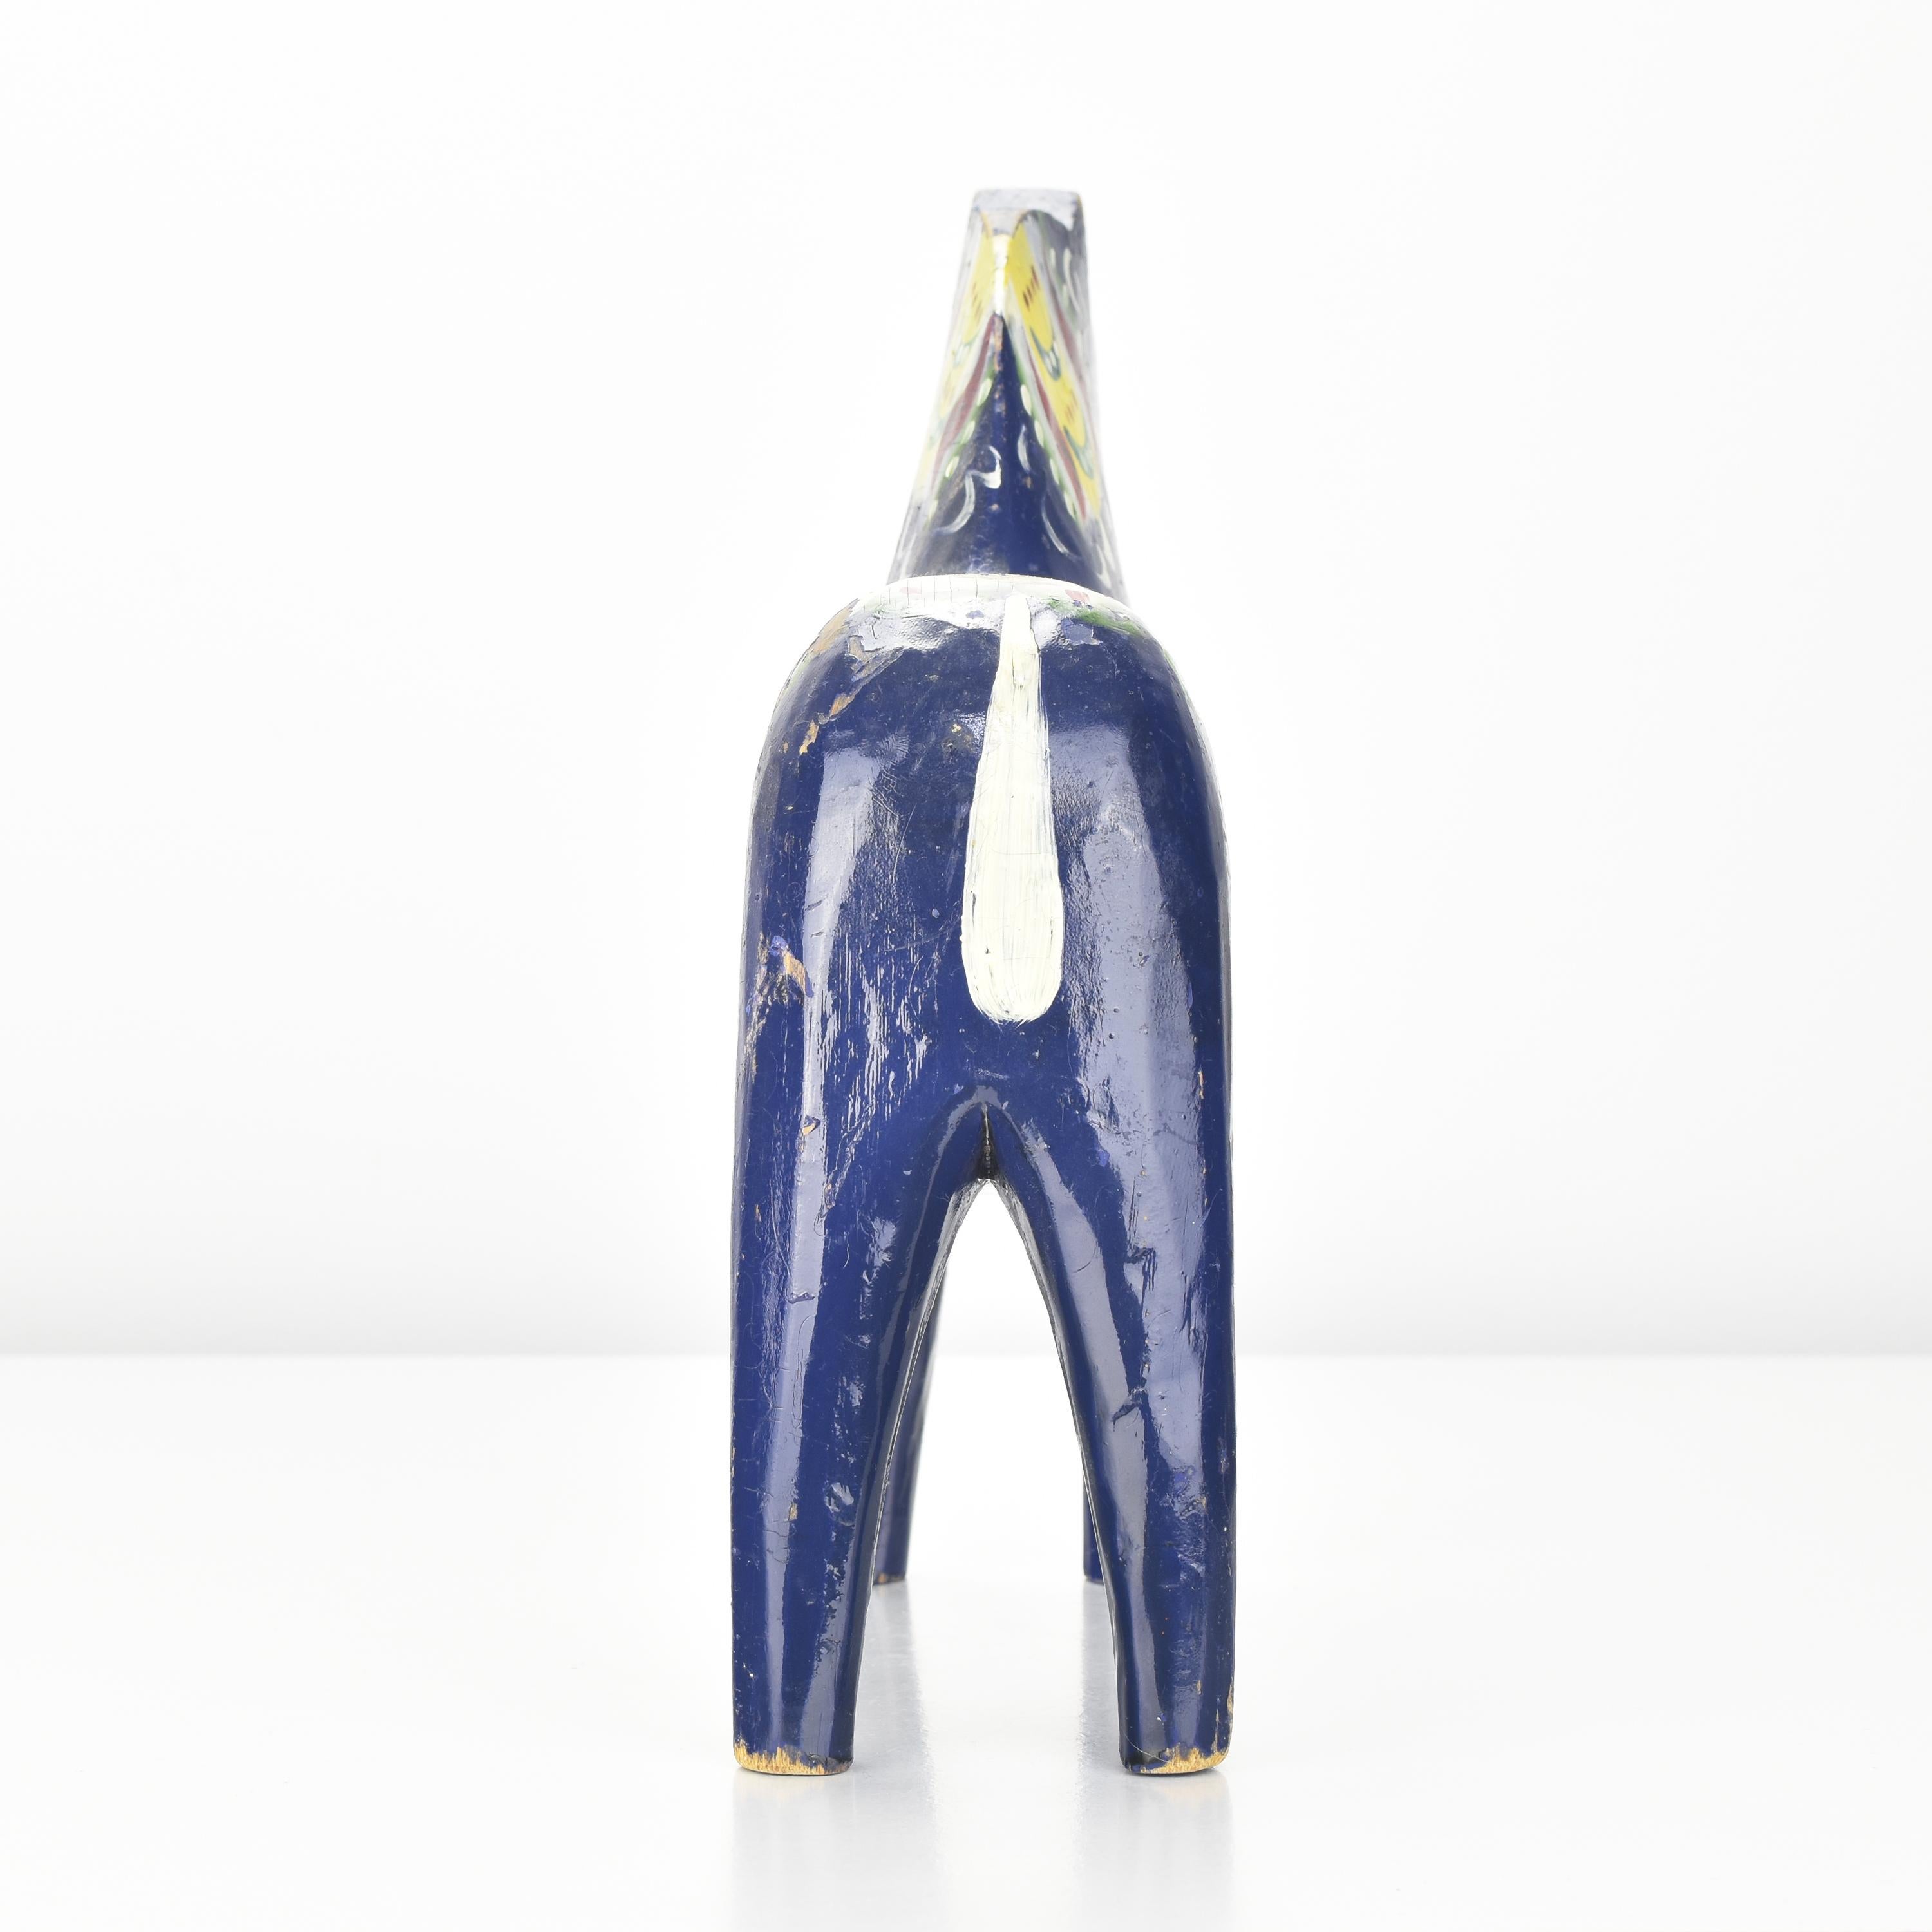 Cheval Dala suédois du début des années 1930 par Nils Olsson. Il est fabriqué en bois sculpté à la main et peint en bleu foncé, avec des décorations polychromes peintes à la main. Cette adorable figurine de taille moyenne serait un excellent ajout à